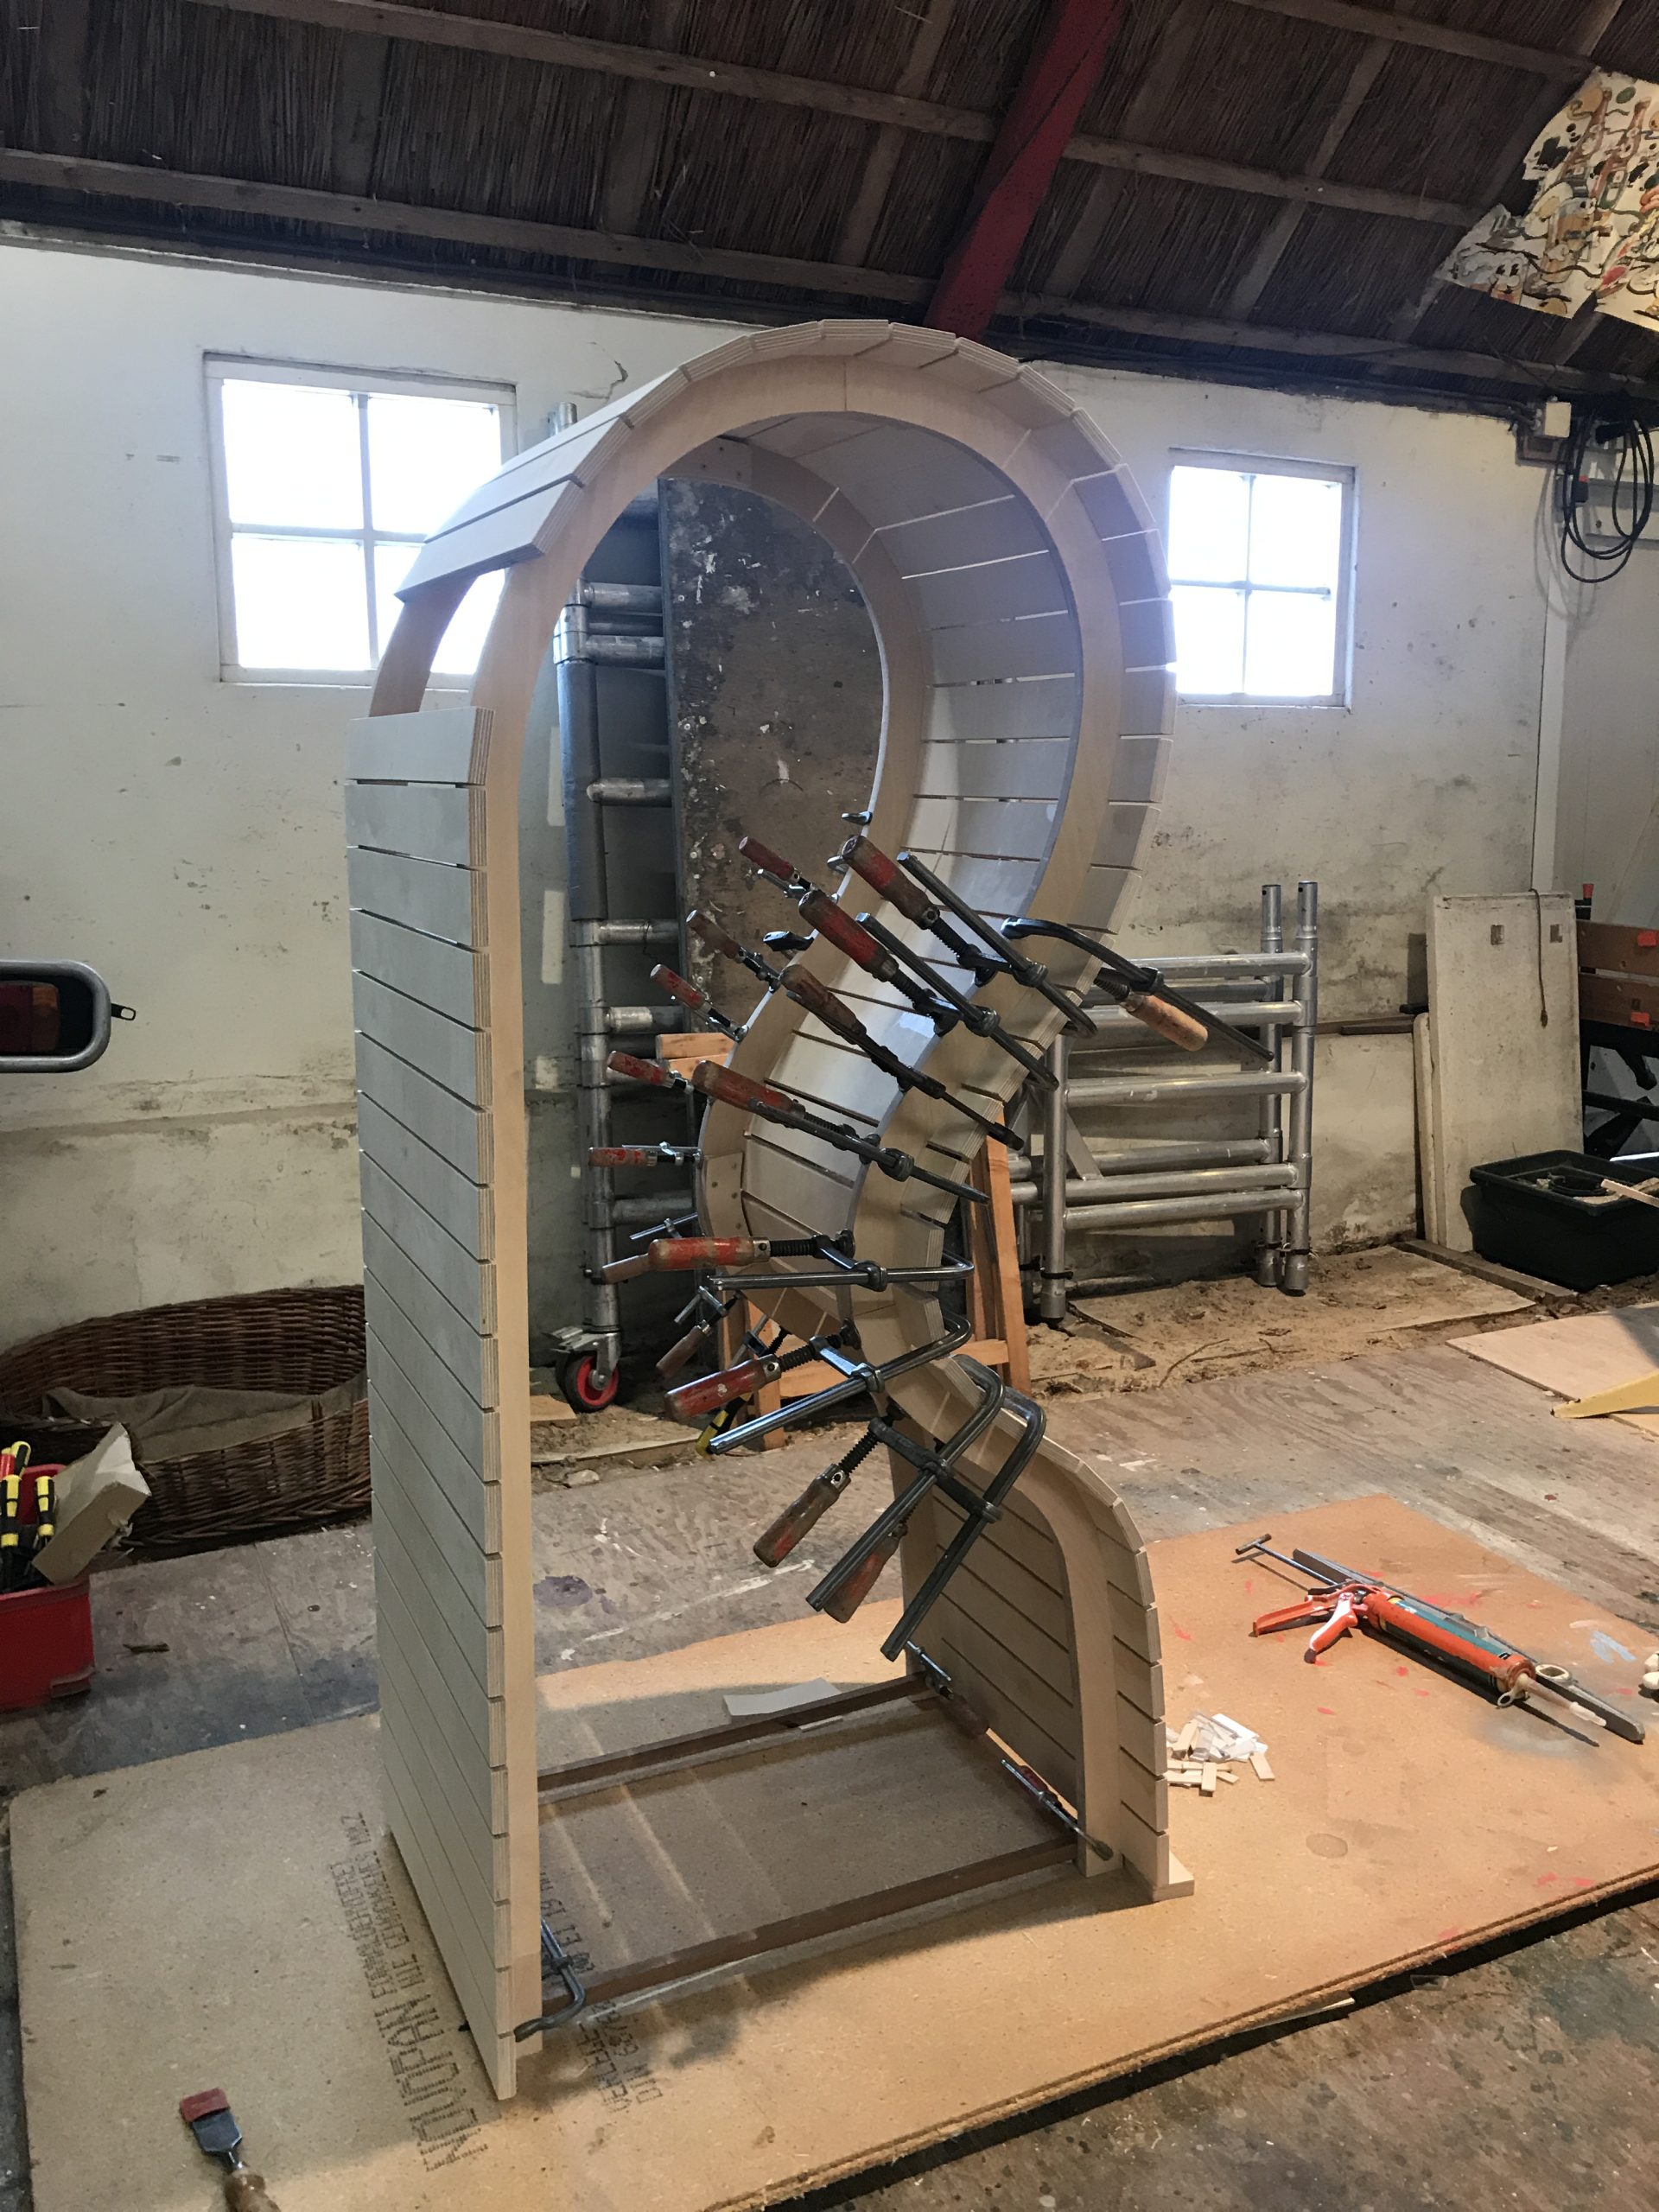 Wood Loop cabinet making off workshop